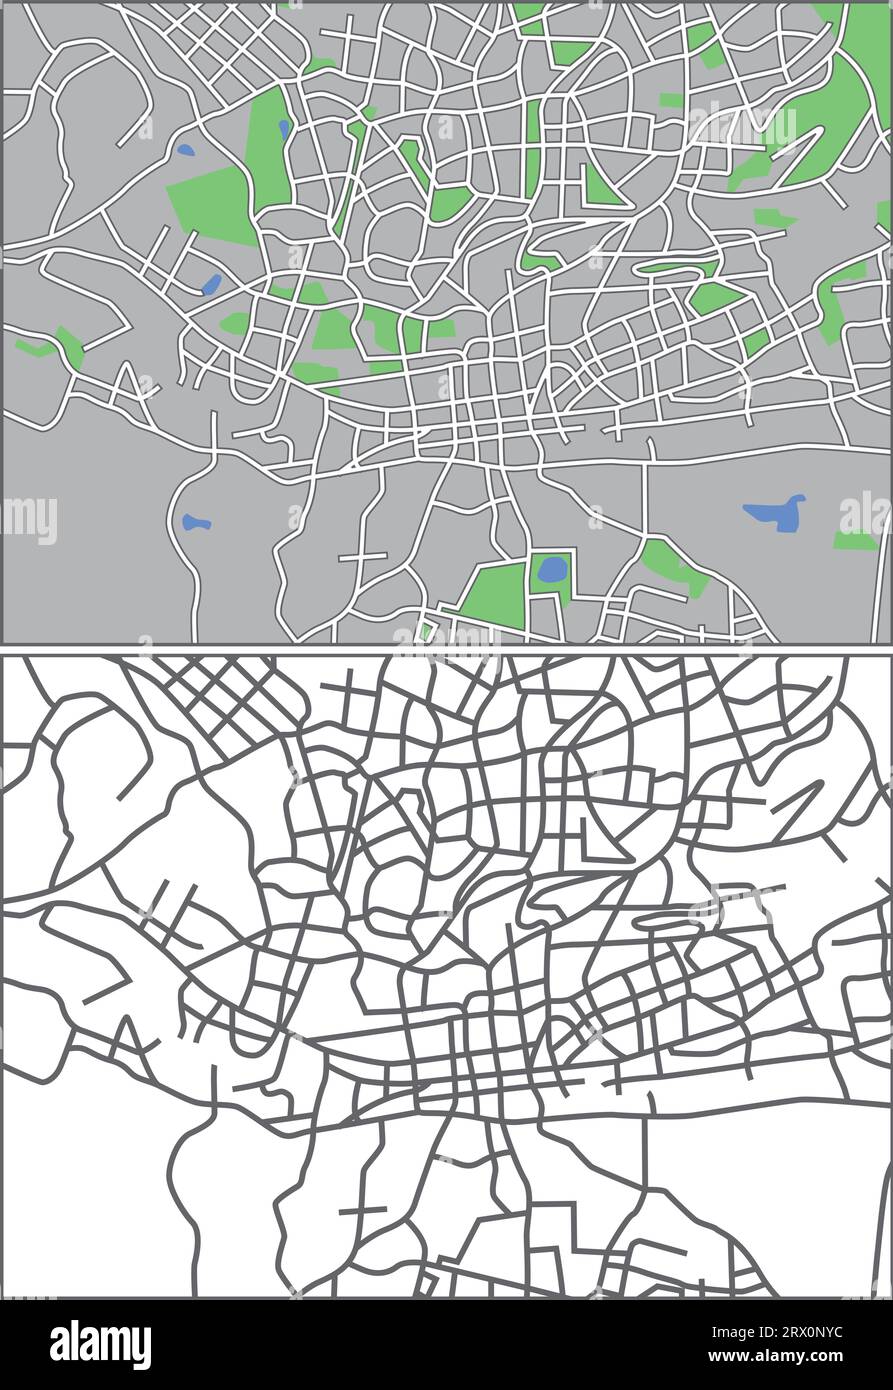 Geschichtete editierbare Vektorstreetmap von Johannesburg, Südafrika, die Linien und farbige Formen für Land, Straßen, Seen und Parks enthält. Stock Vektor